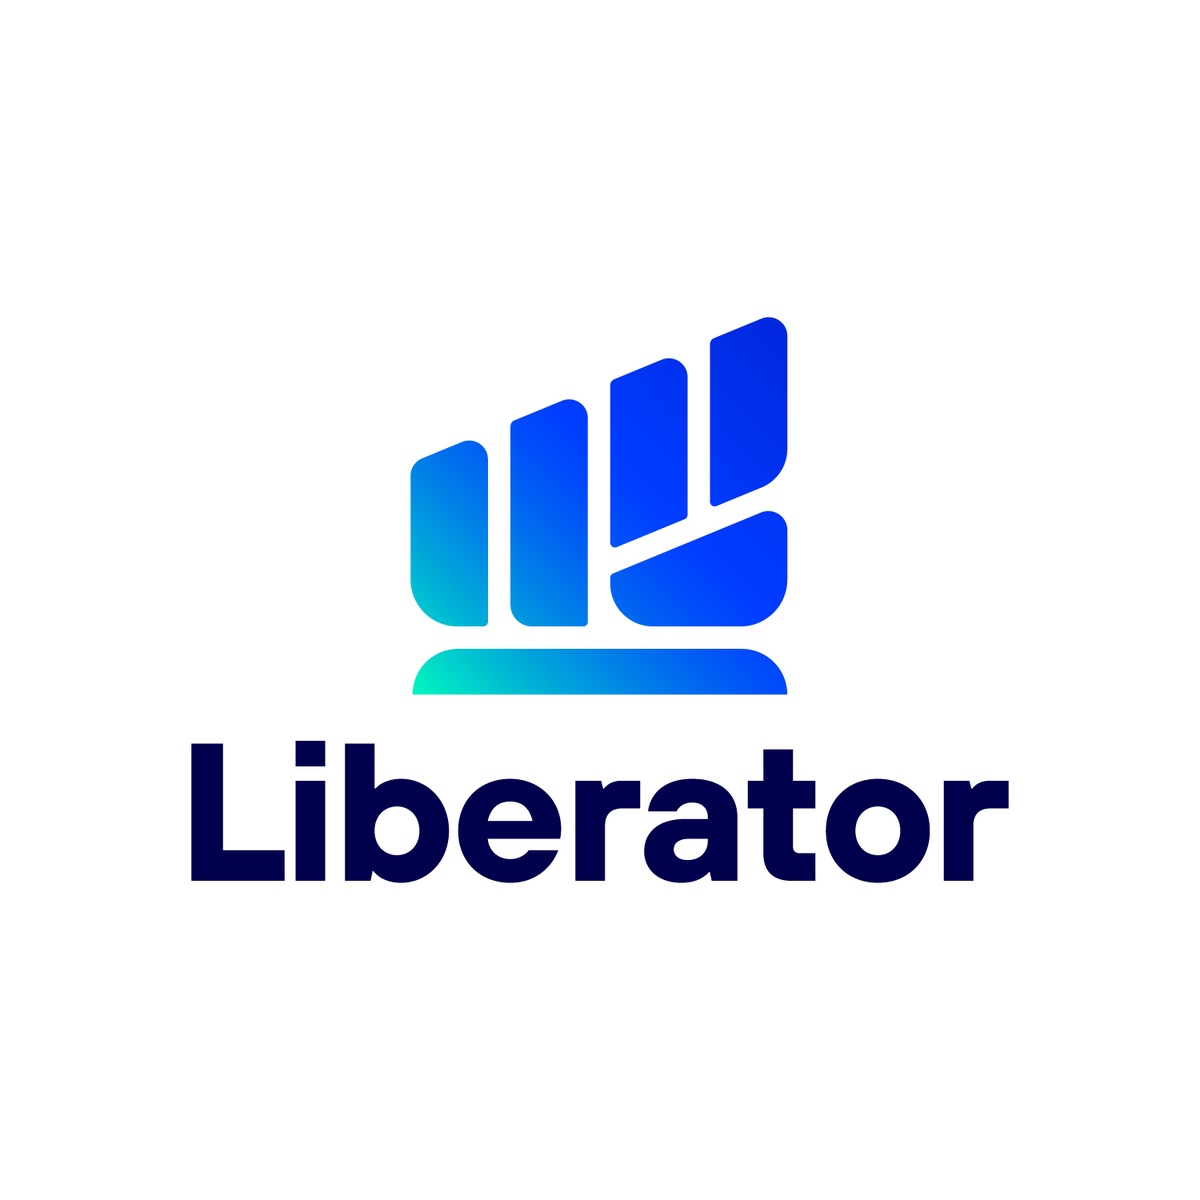 สุดยอด บล.ต้องยกนิ้วให้ Liberator นอกจากให้เทรดฟรีไม่มีค่าคอม ยังเสิร์ฟต่อ บริการ LIB Express ผู้ช่วยแบบส่วนตัว